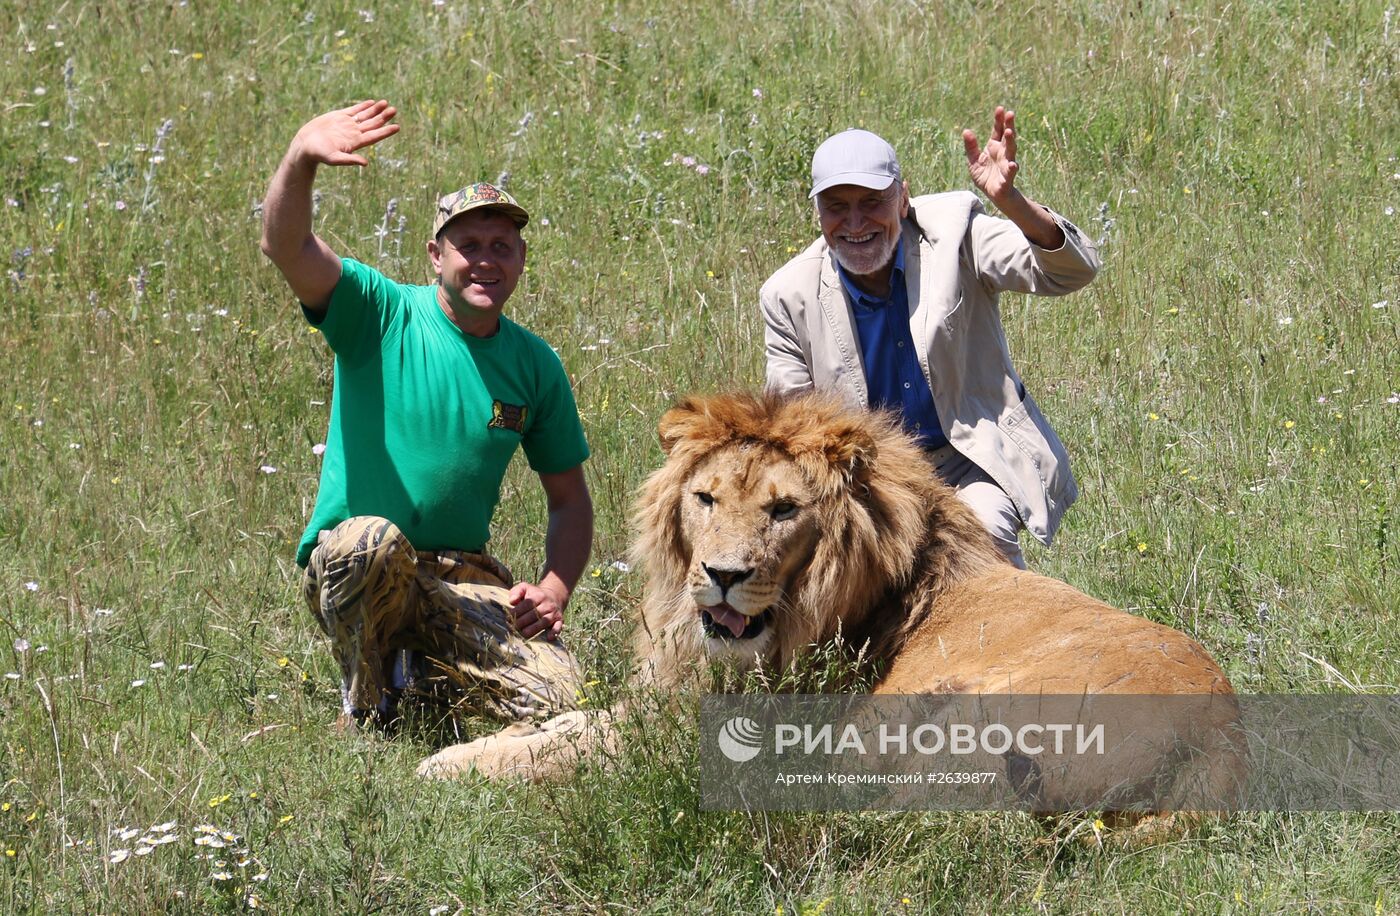 Николай Дроздов на съемках программы "В мире животных" в крымском сафари-парке "Тайган"